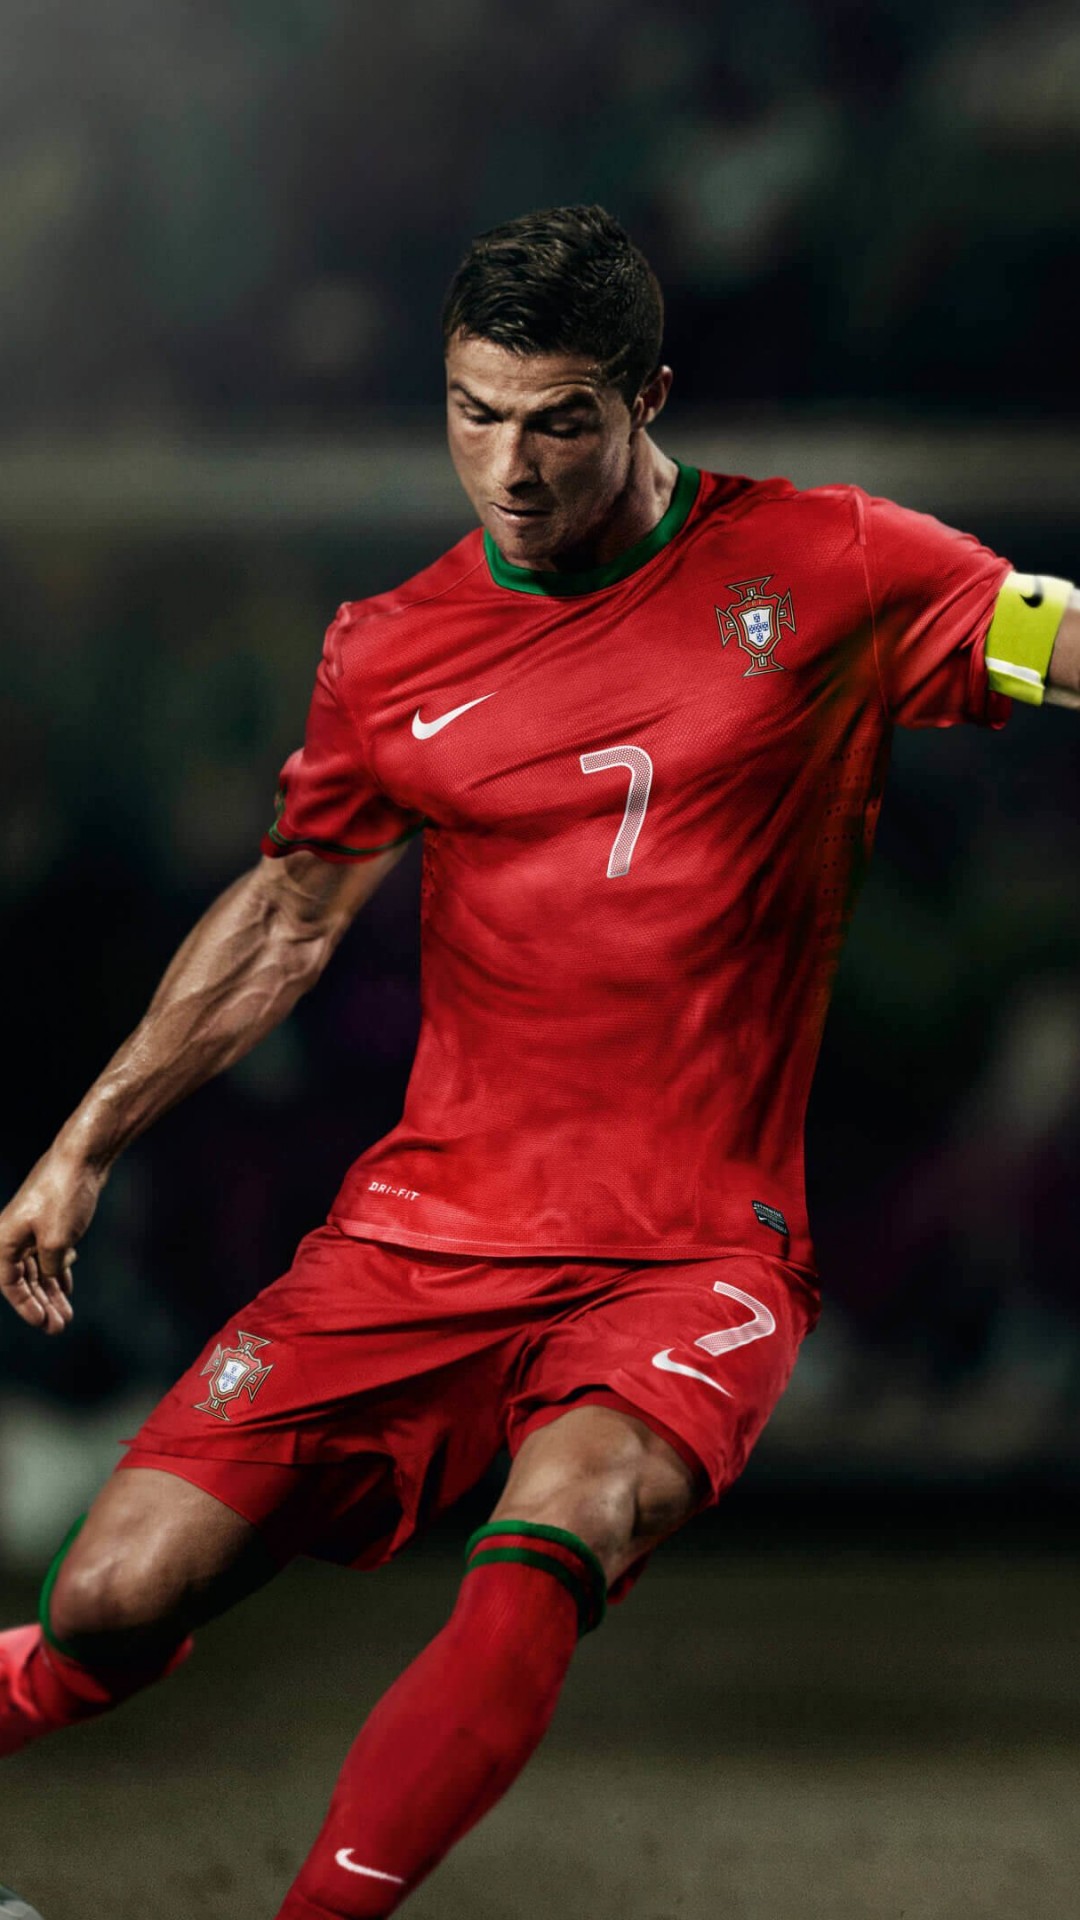 Cristiano Ronaldo In Portugal Jersey Wallpaper for SONY Xperia Z2